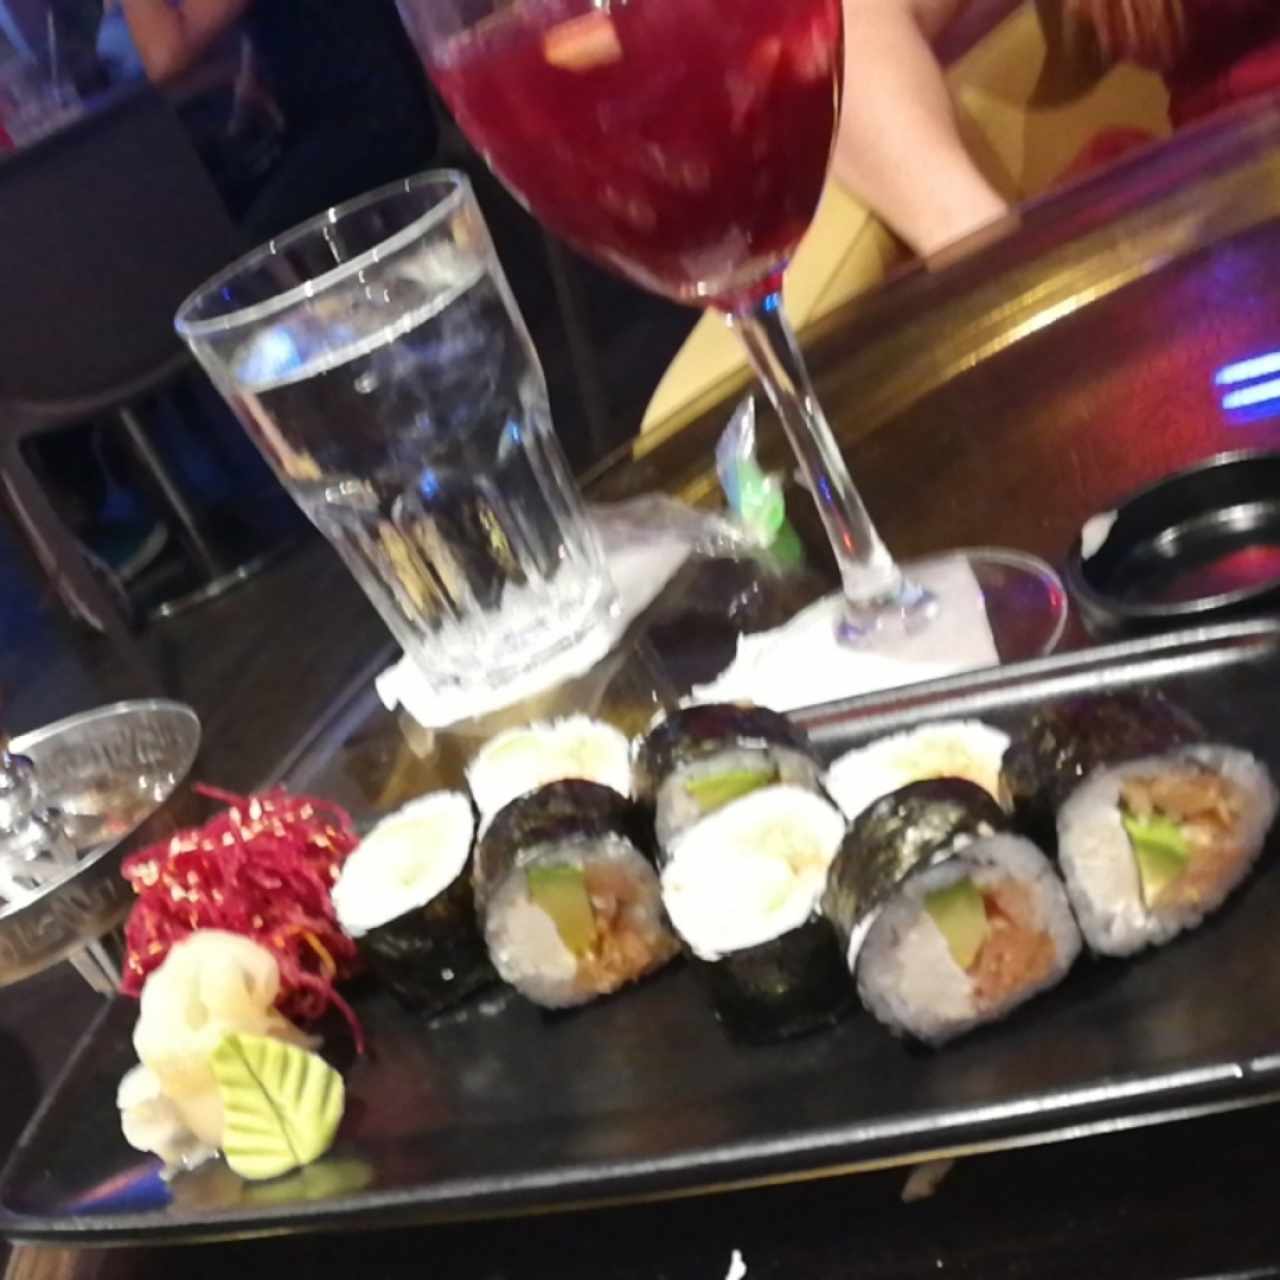 sushi + sangria + arguile